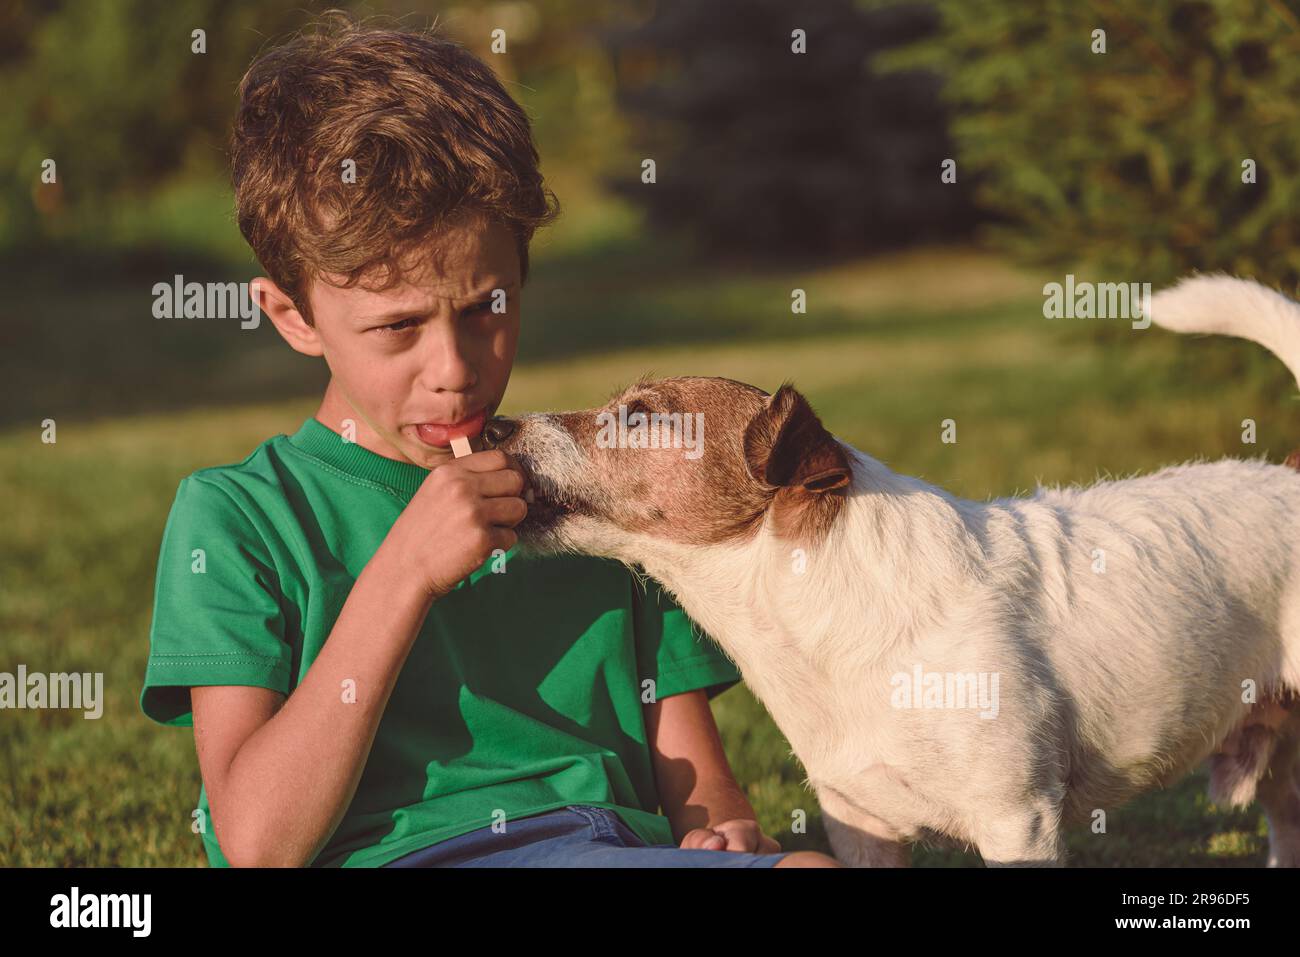 Am Sommertag isst das Kind selbstgemachtes Obst am Stiel und der Hund bettelt um einen Happen Stockfoto